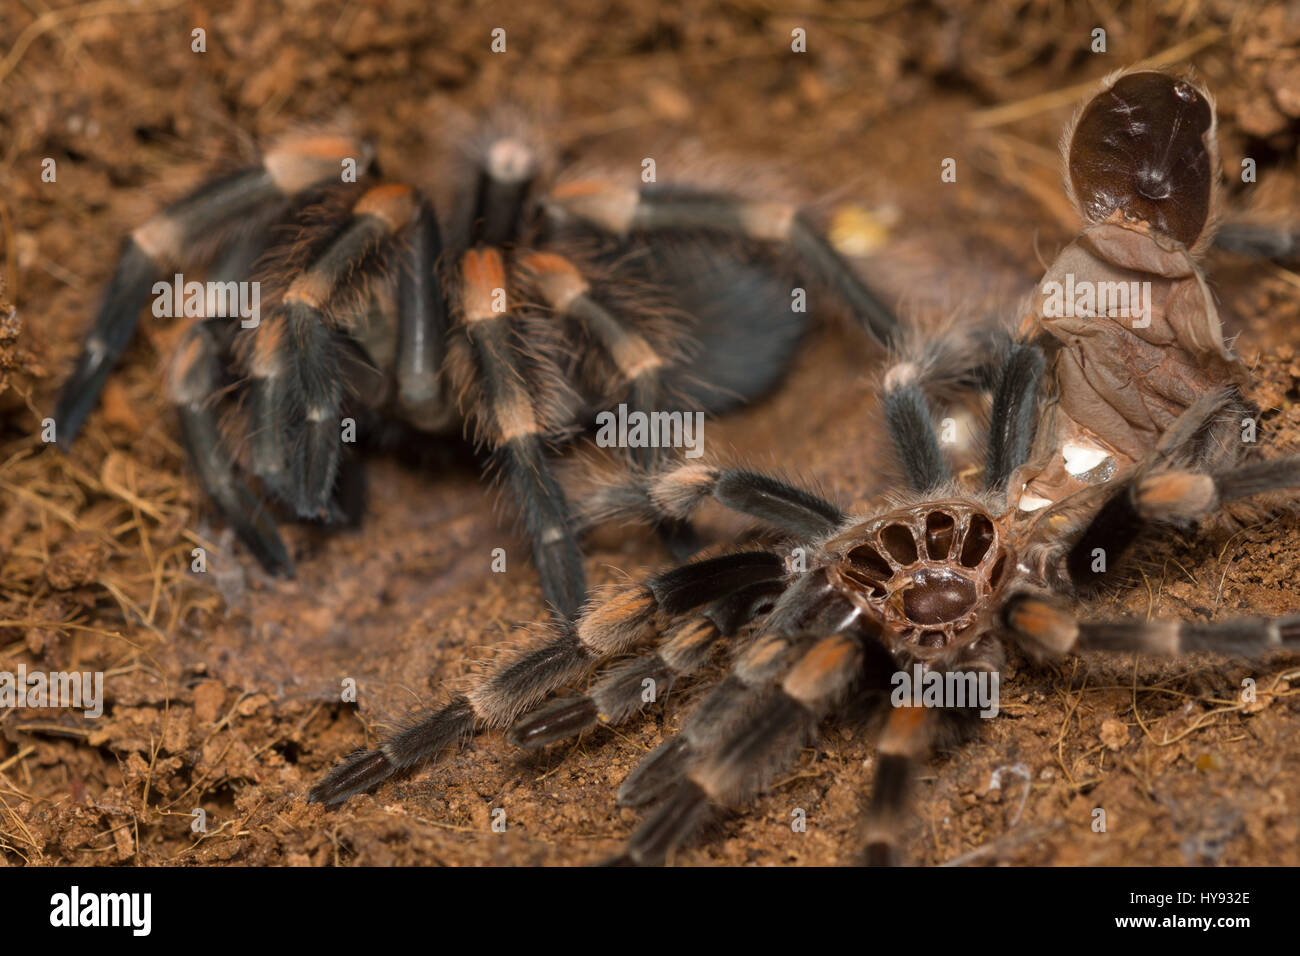 Mexican redknee tarantula shedding it's skin, Brachypelma smithi Stock Photo